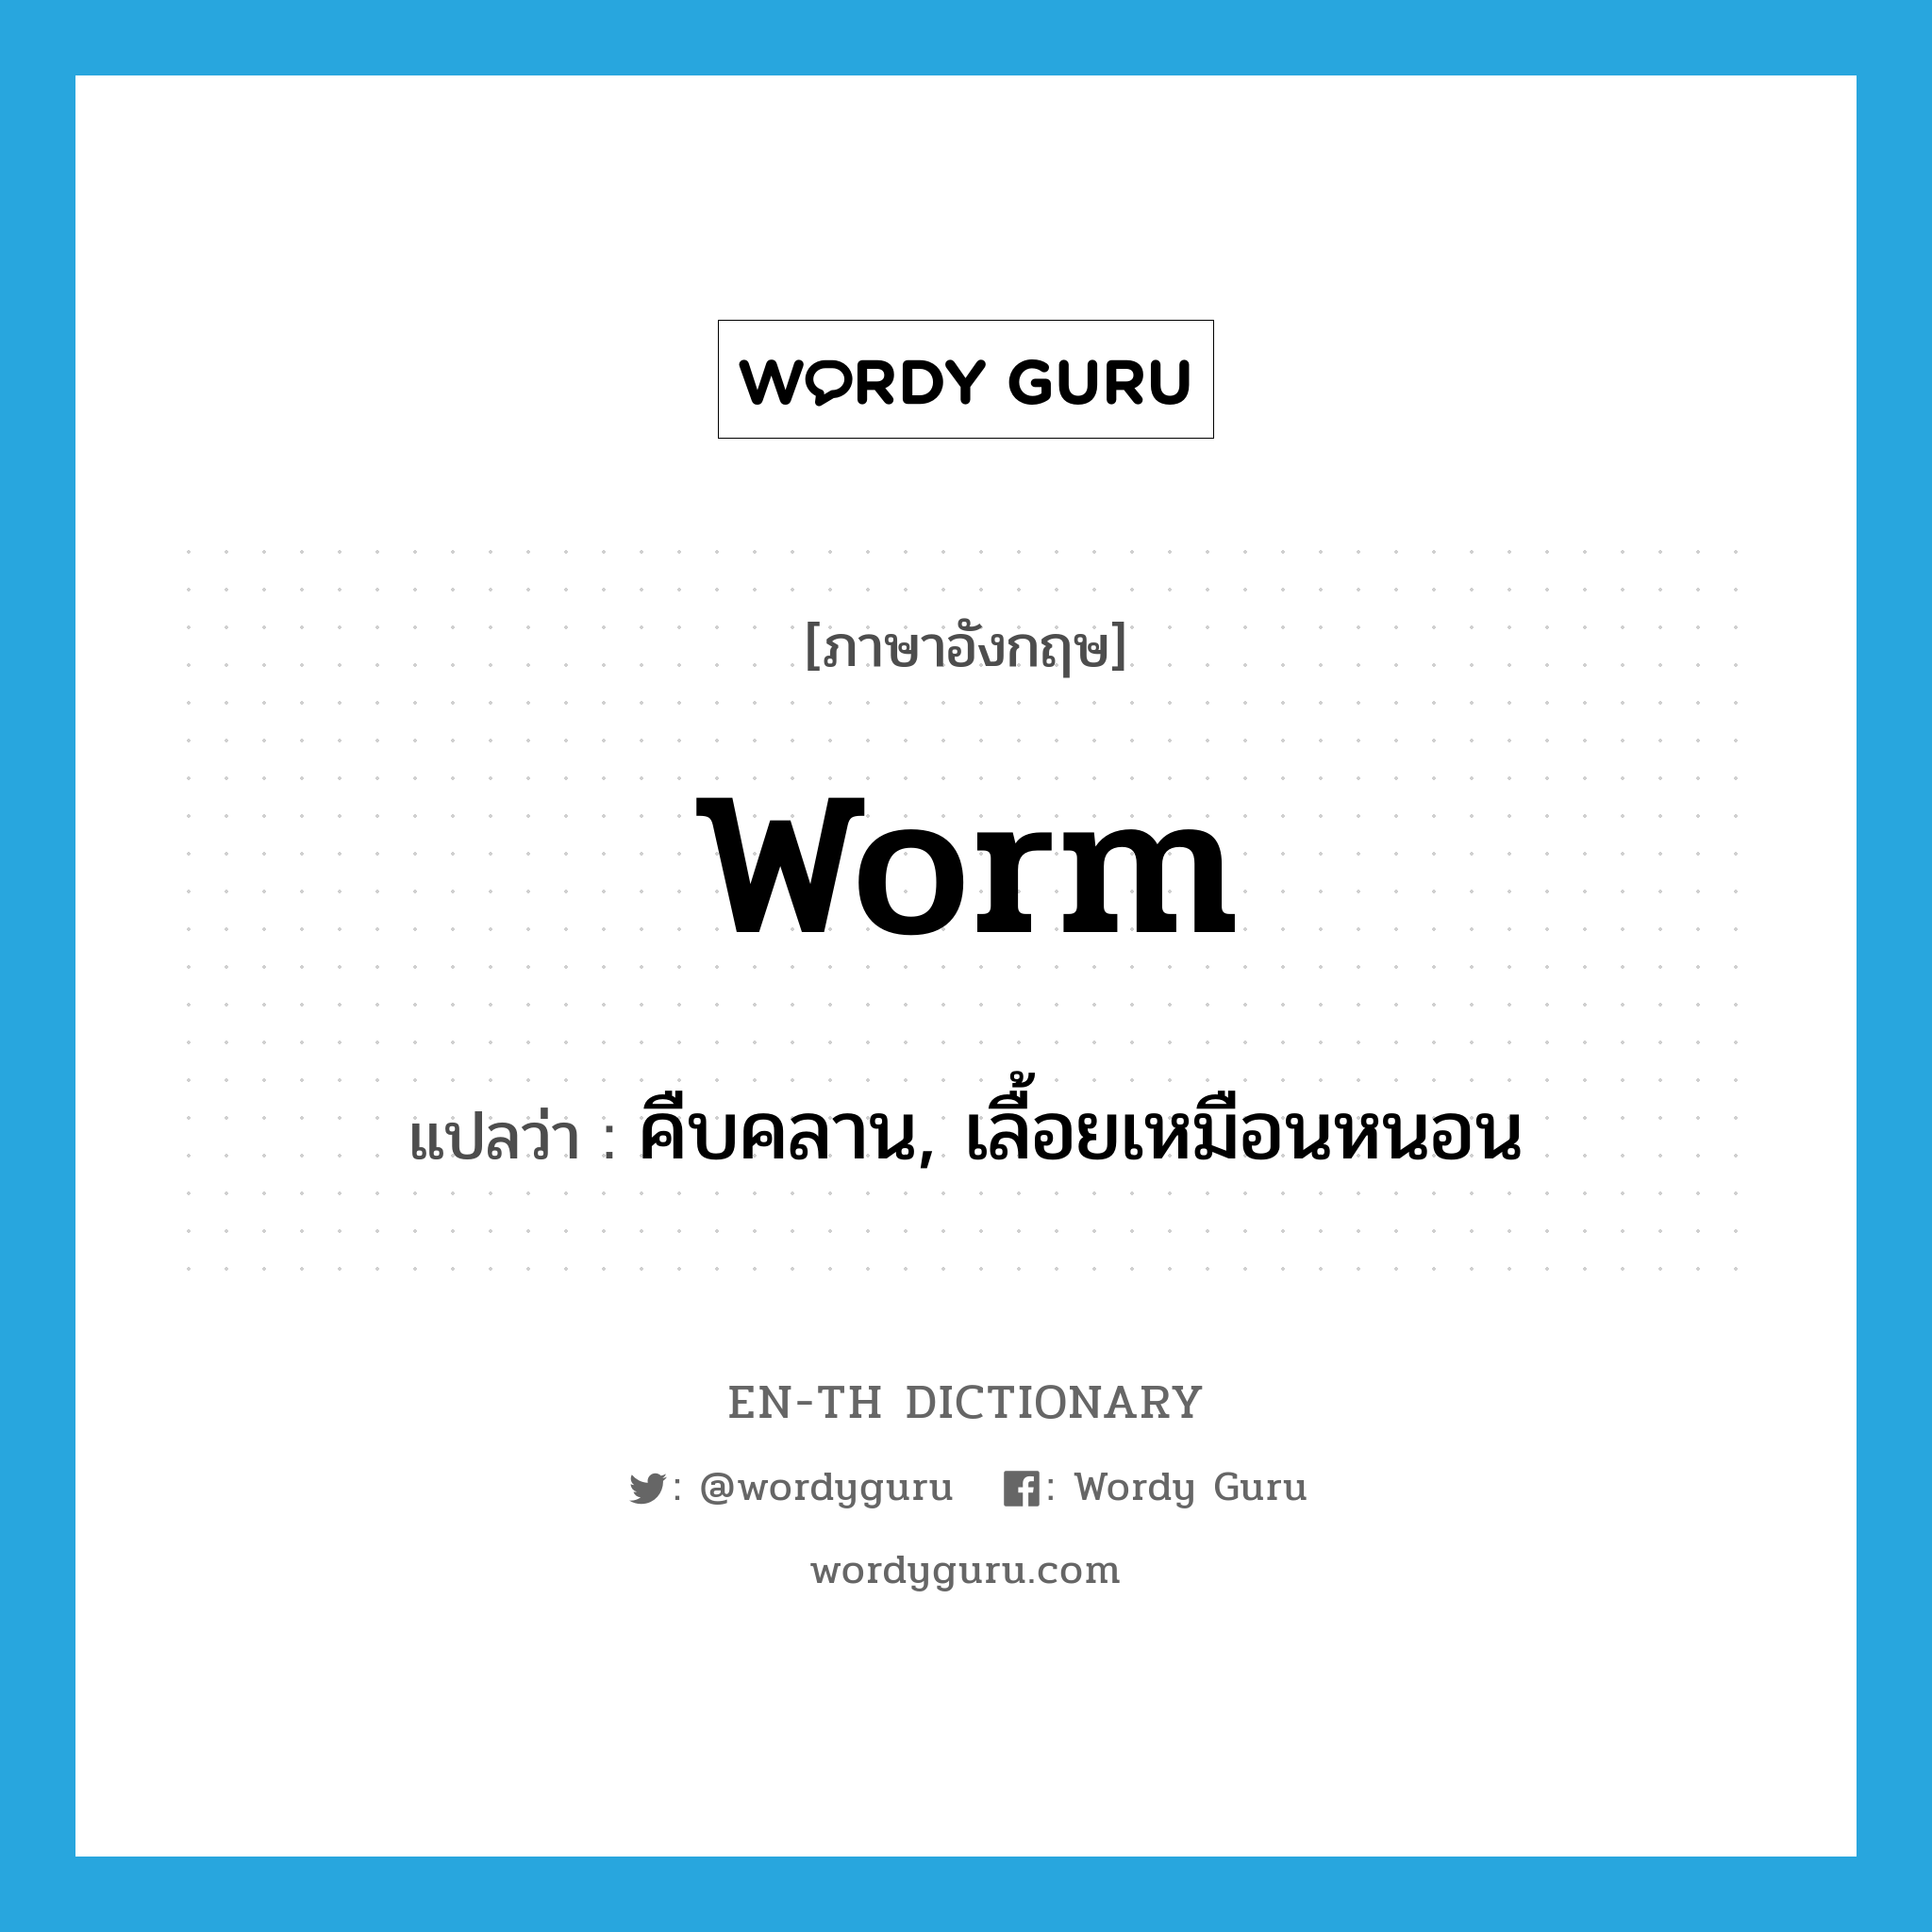 คืบคลาน, เลื้อยเหมือนหนอน ภาษาอังกฤษ?, คำศัพท์ภาษาอังกฤษ คืบคลาน, เลื้อยเหมือนหนอน แปลว่า worm ประเภท VI หมวด VI